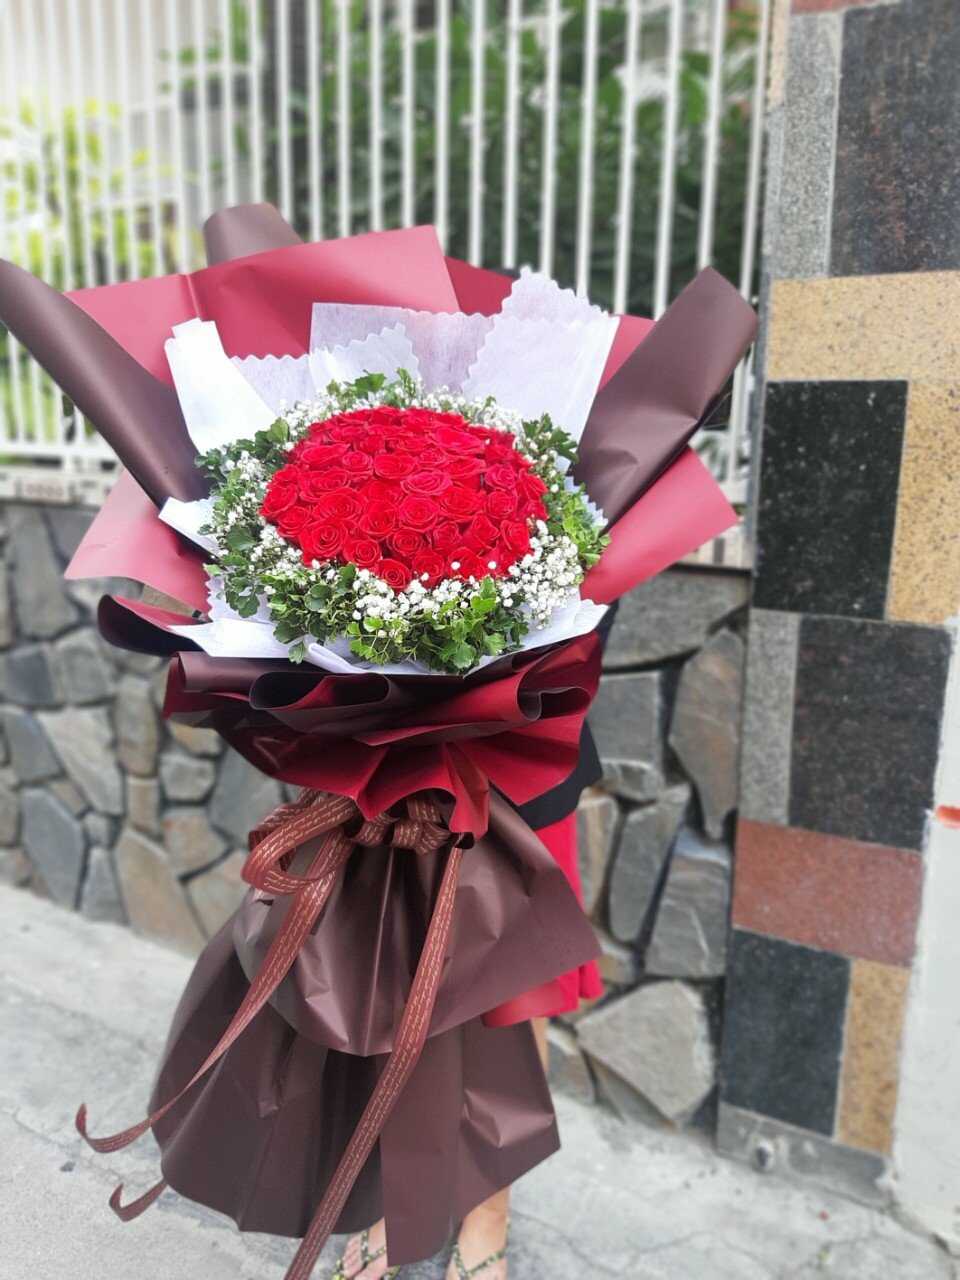 Tiệm hoa tươi Ứng Hòa, Hà Nội có nhận giao hoa tận nhà